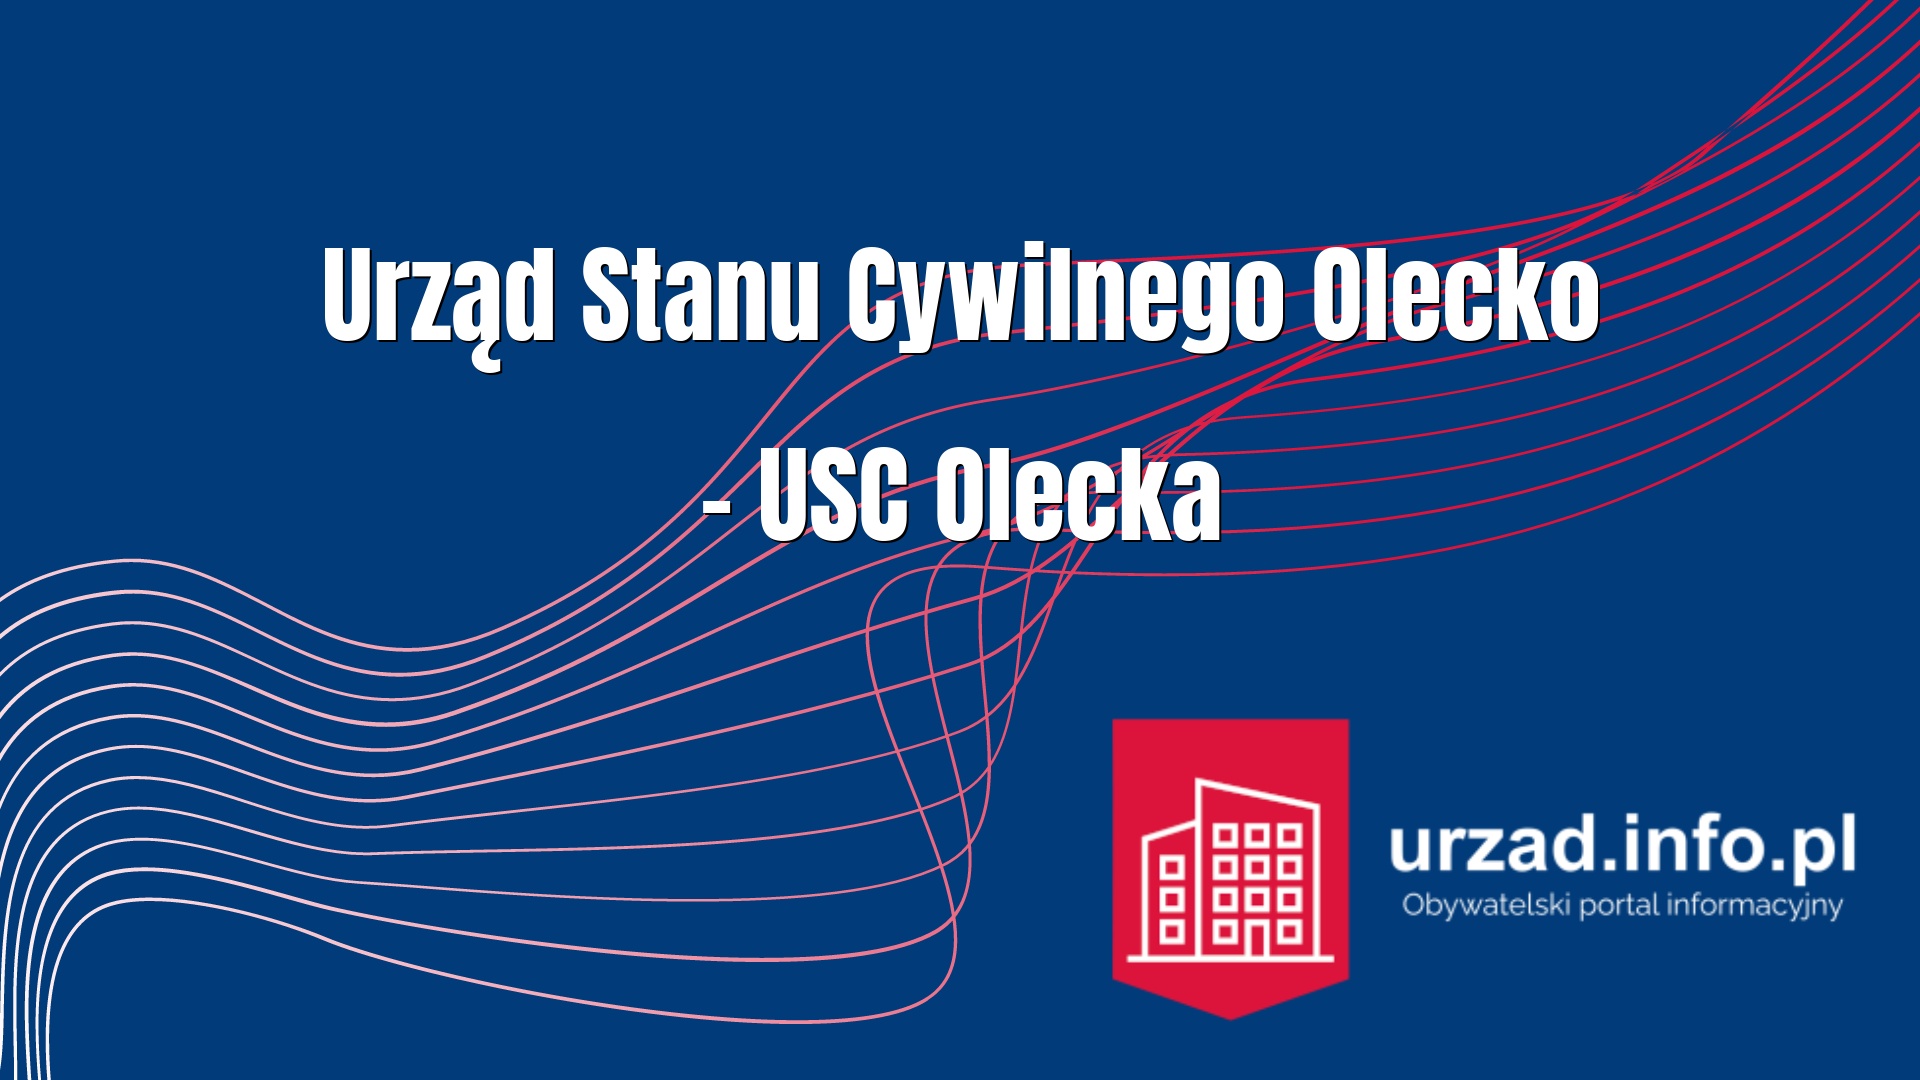 Urząd Stanu Cywilnego Olecko – USC Olecka